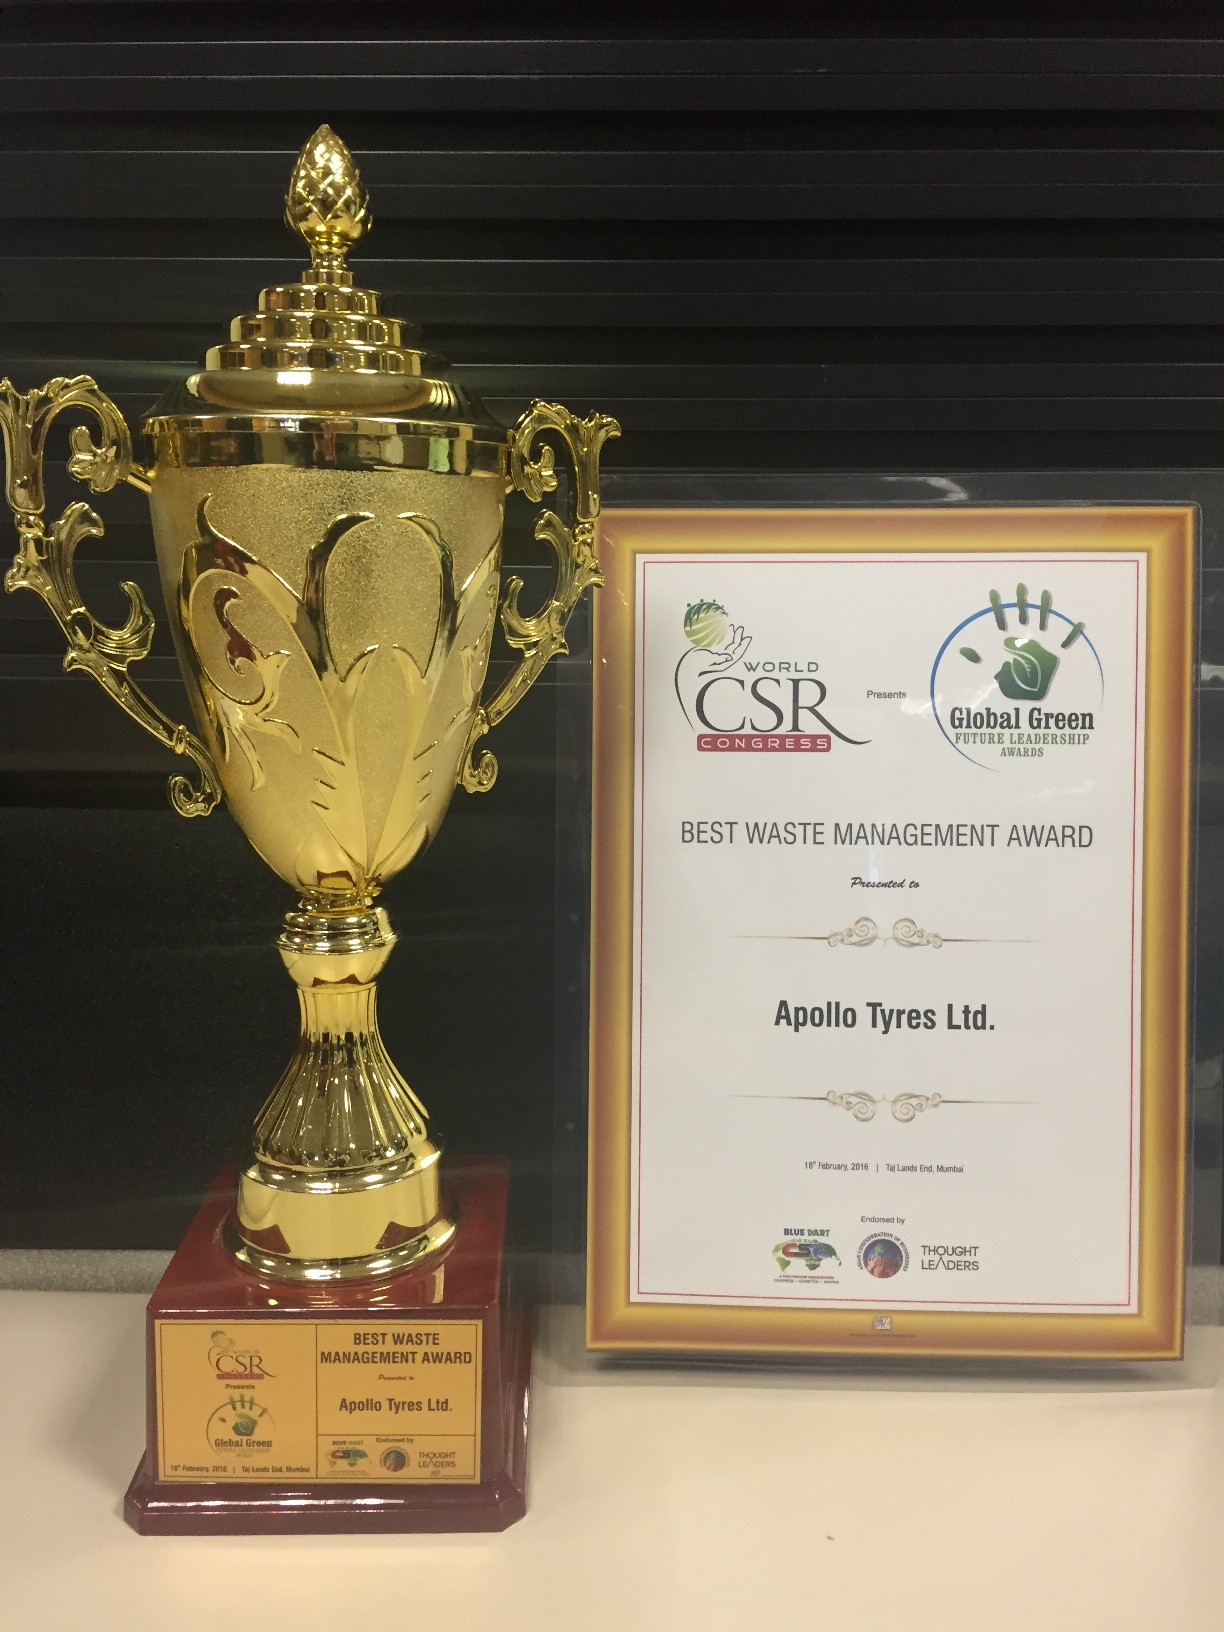 Apollo wins Global Green Future Leadership Award 2016